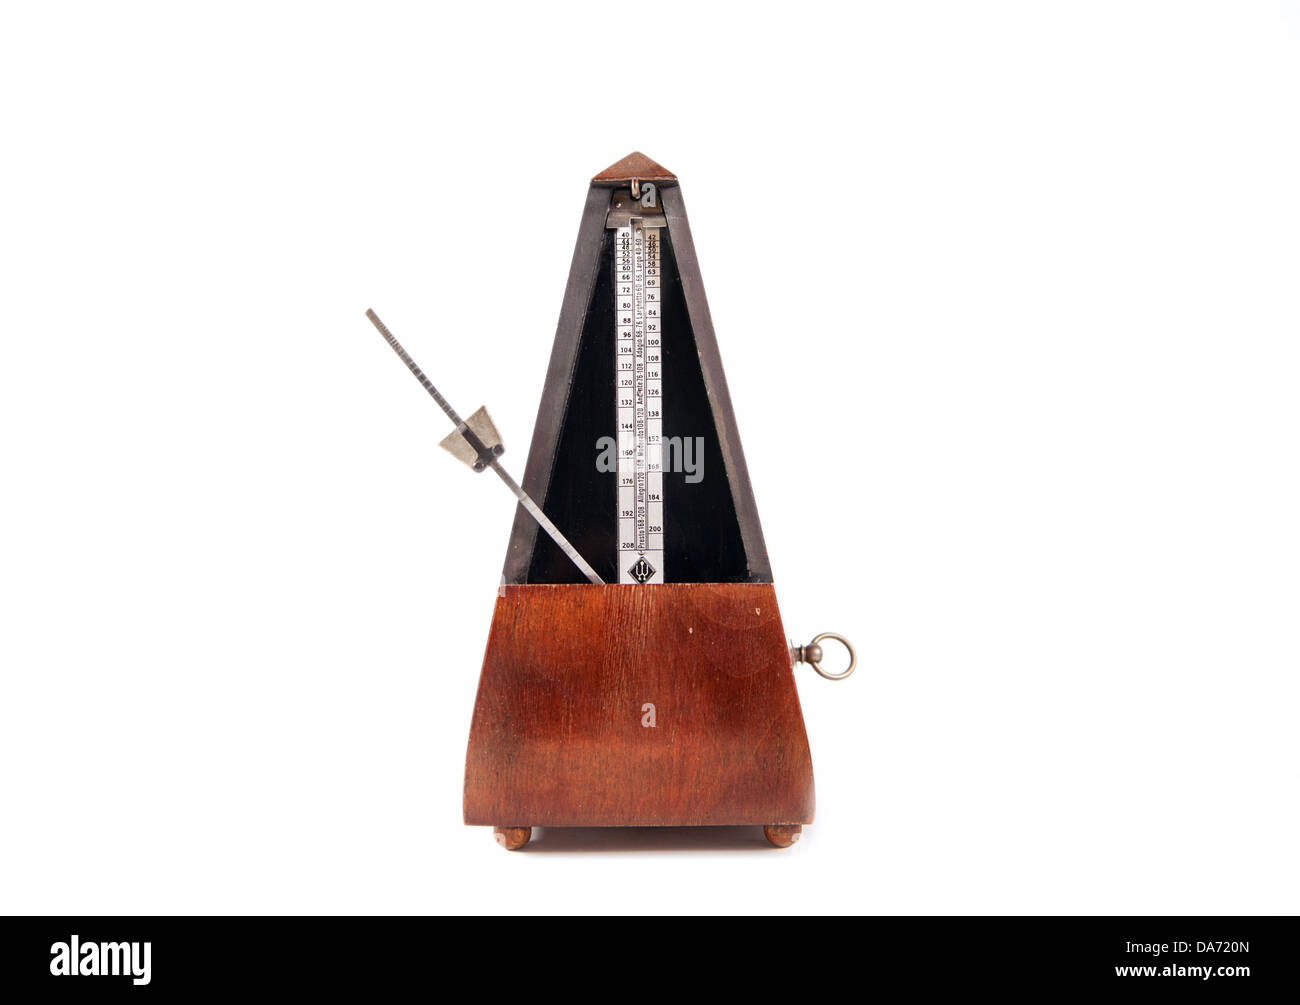 En bois Vintage musique metronome timer sur le fond blanc Banque D'Images